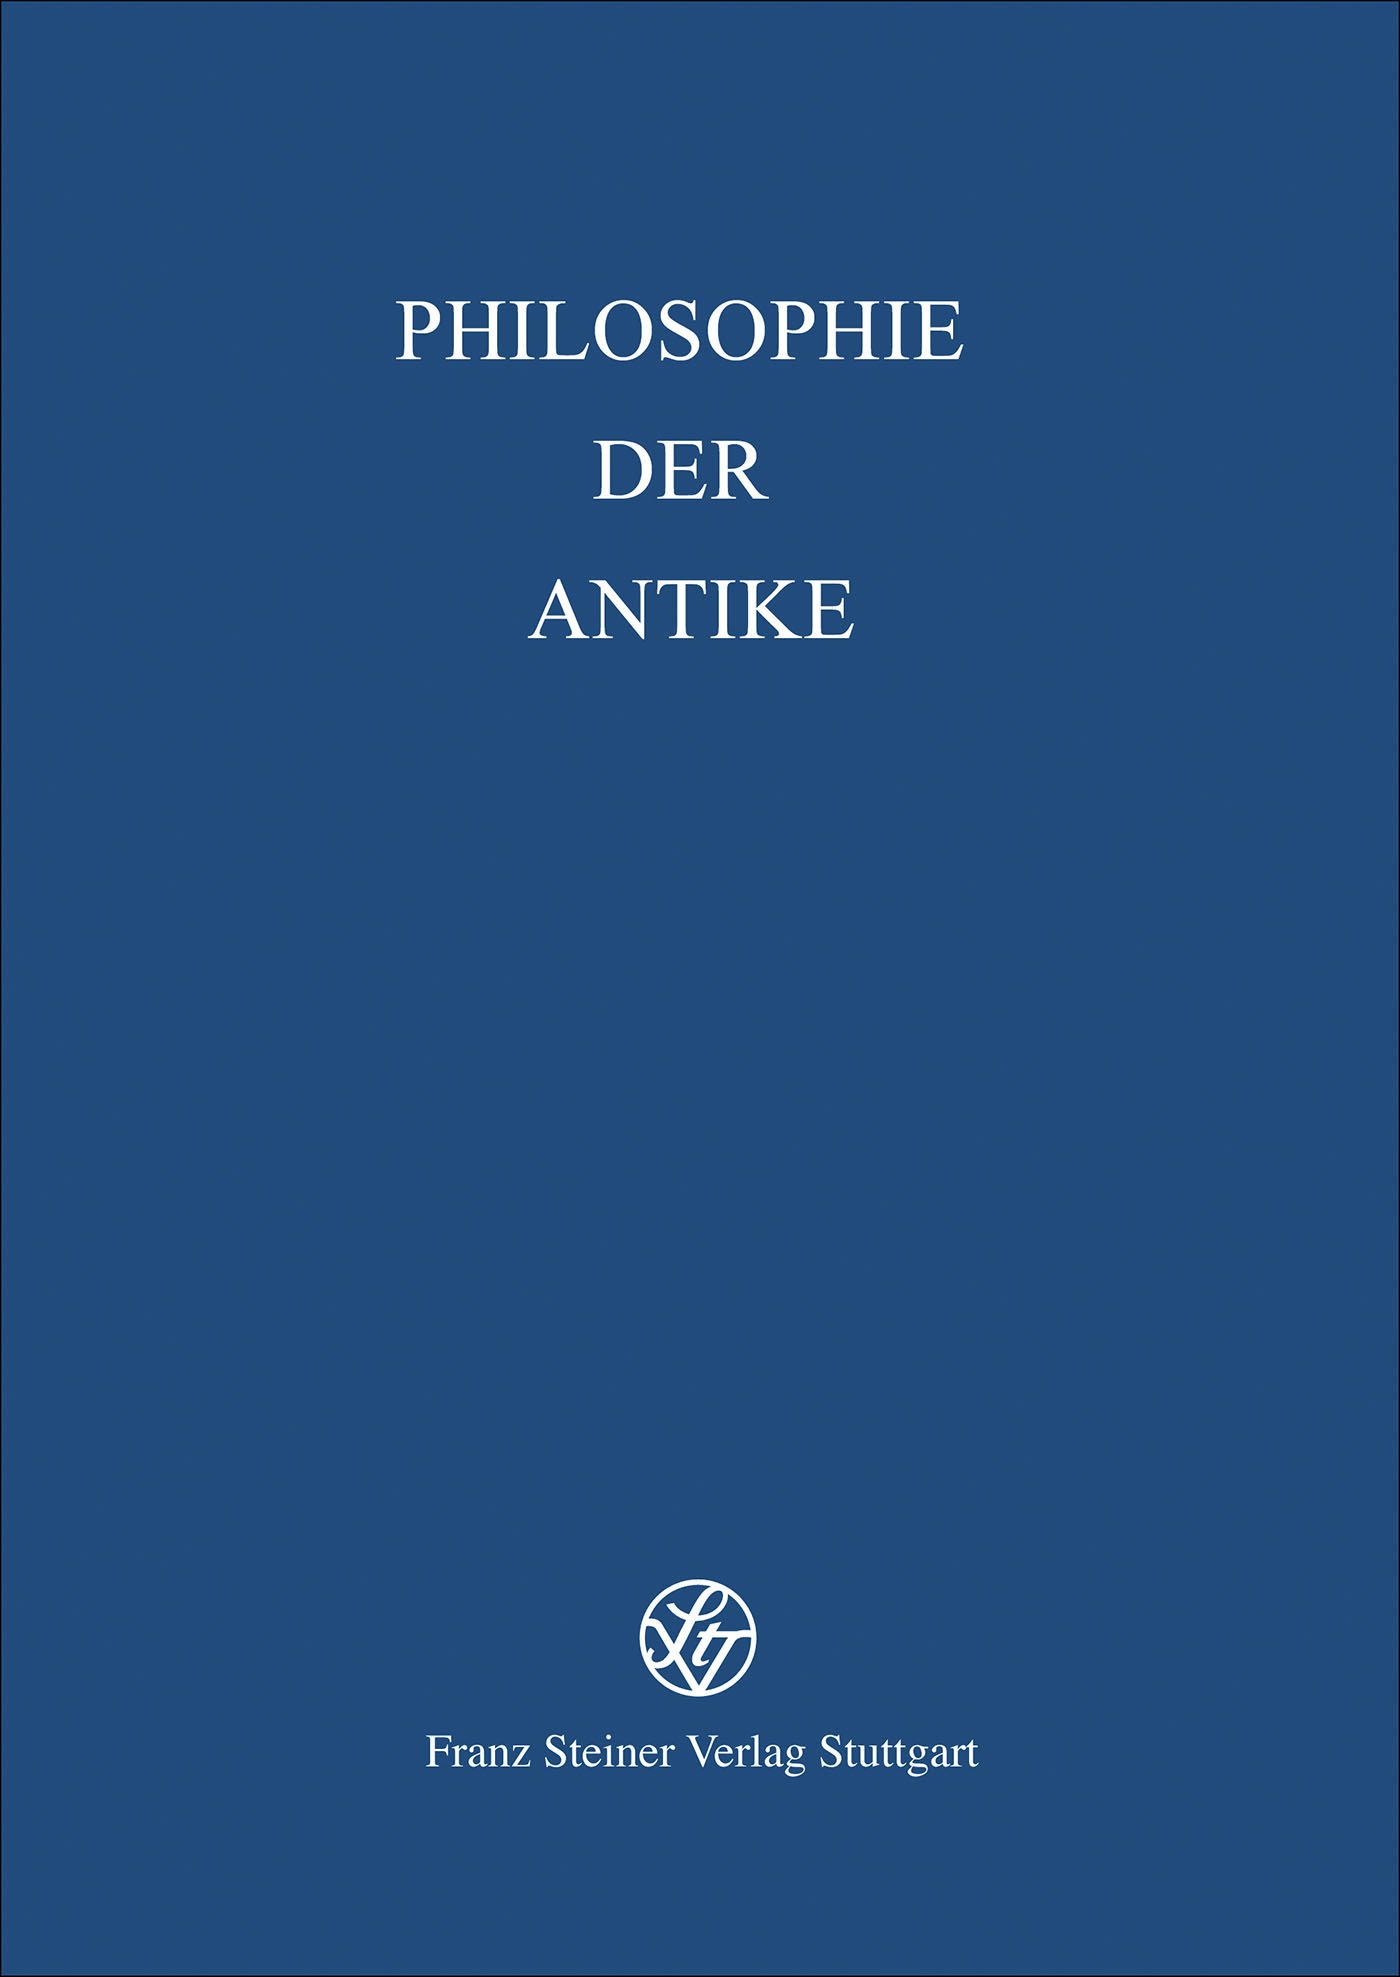 Philosophie und Wissenschaft in der Antike